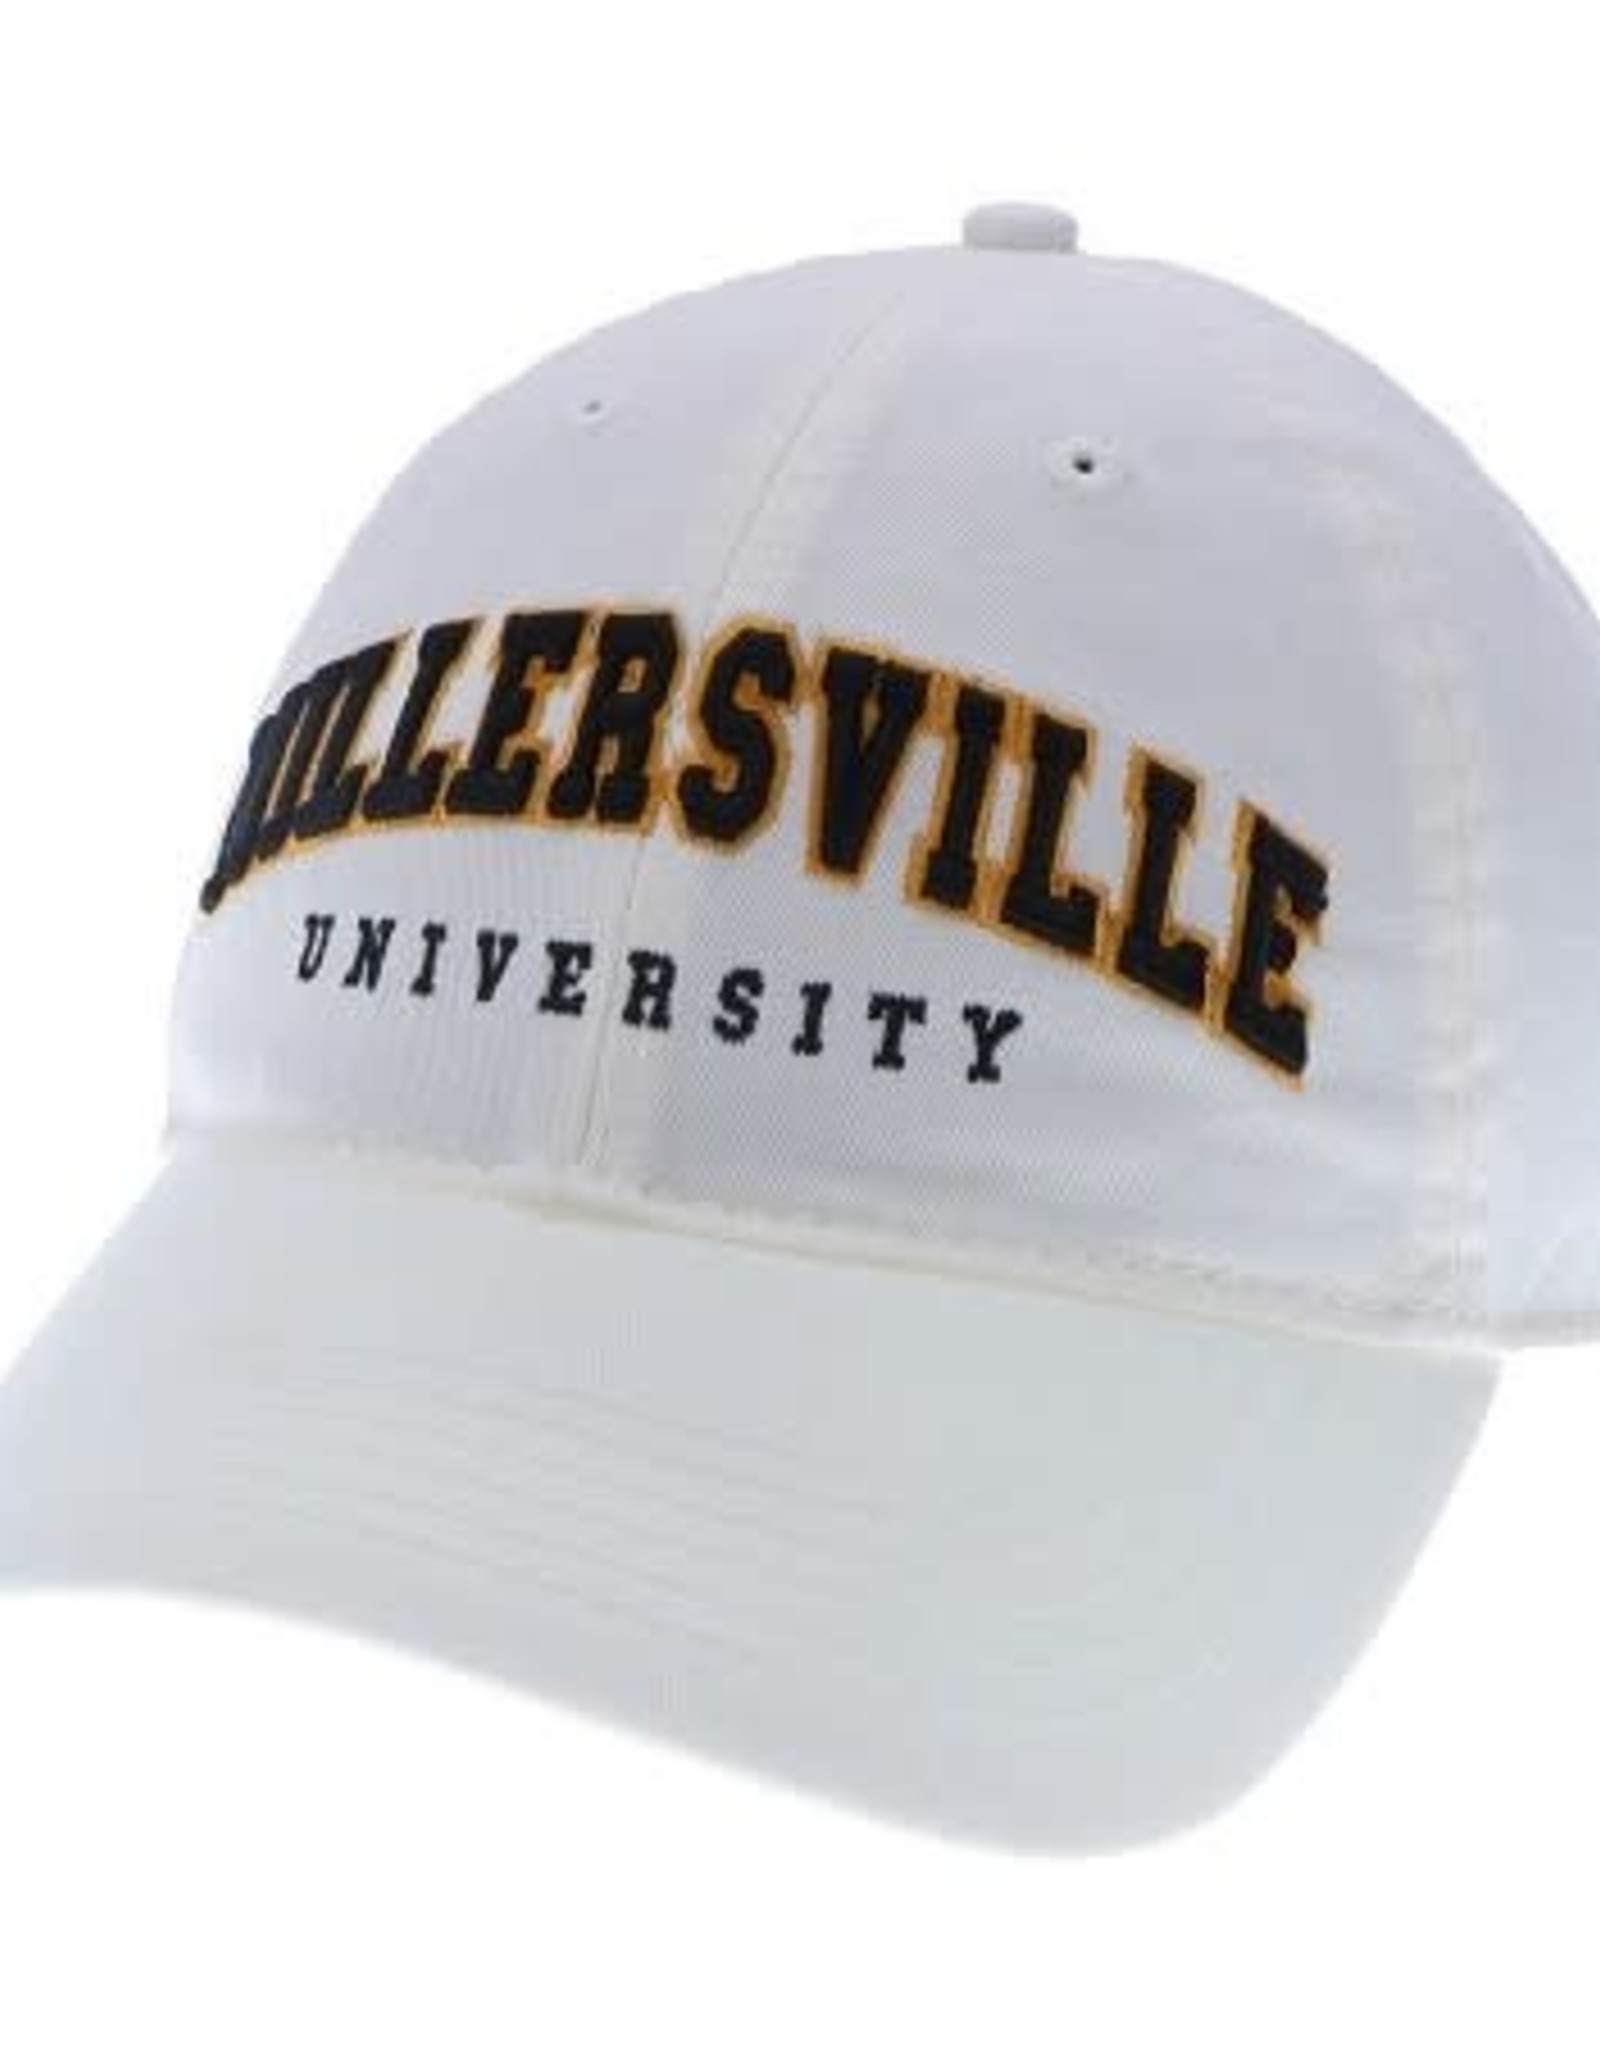 League Millersville University Arch Cap